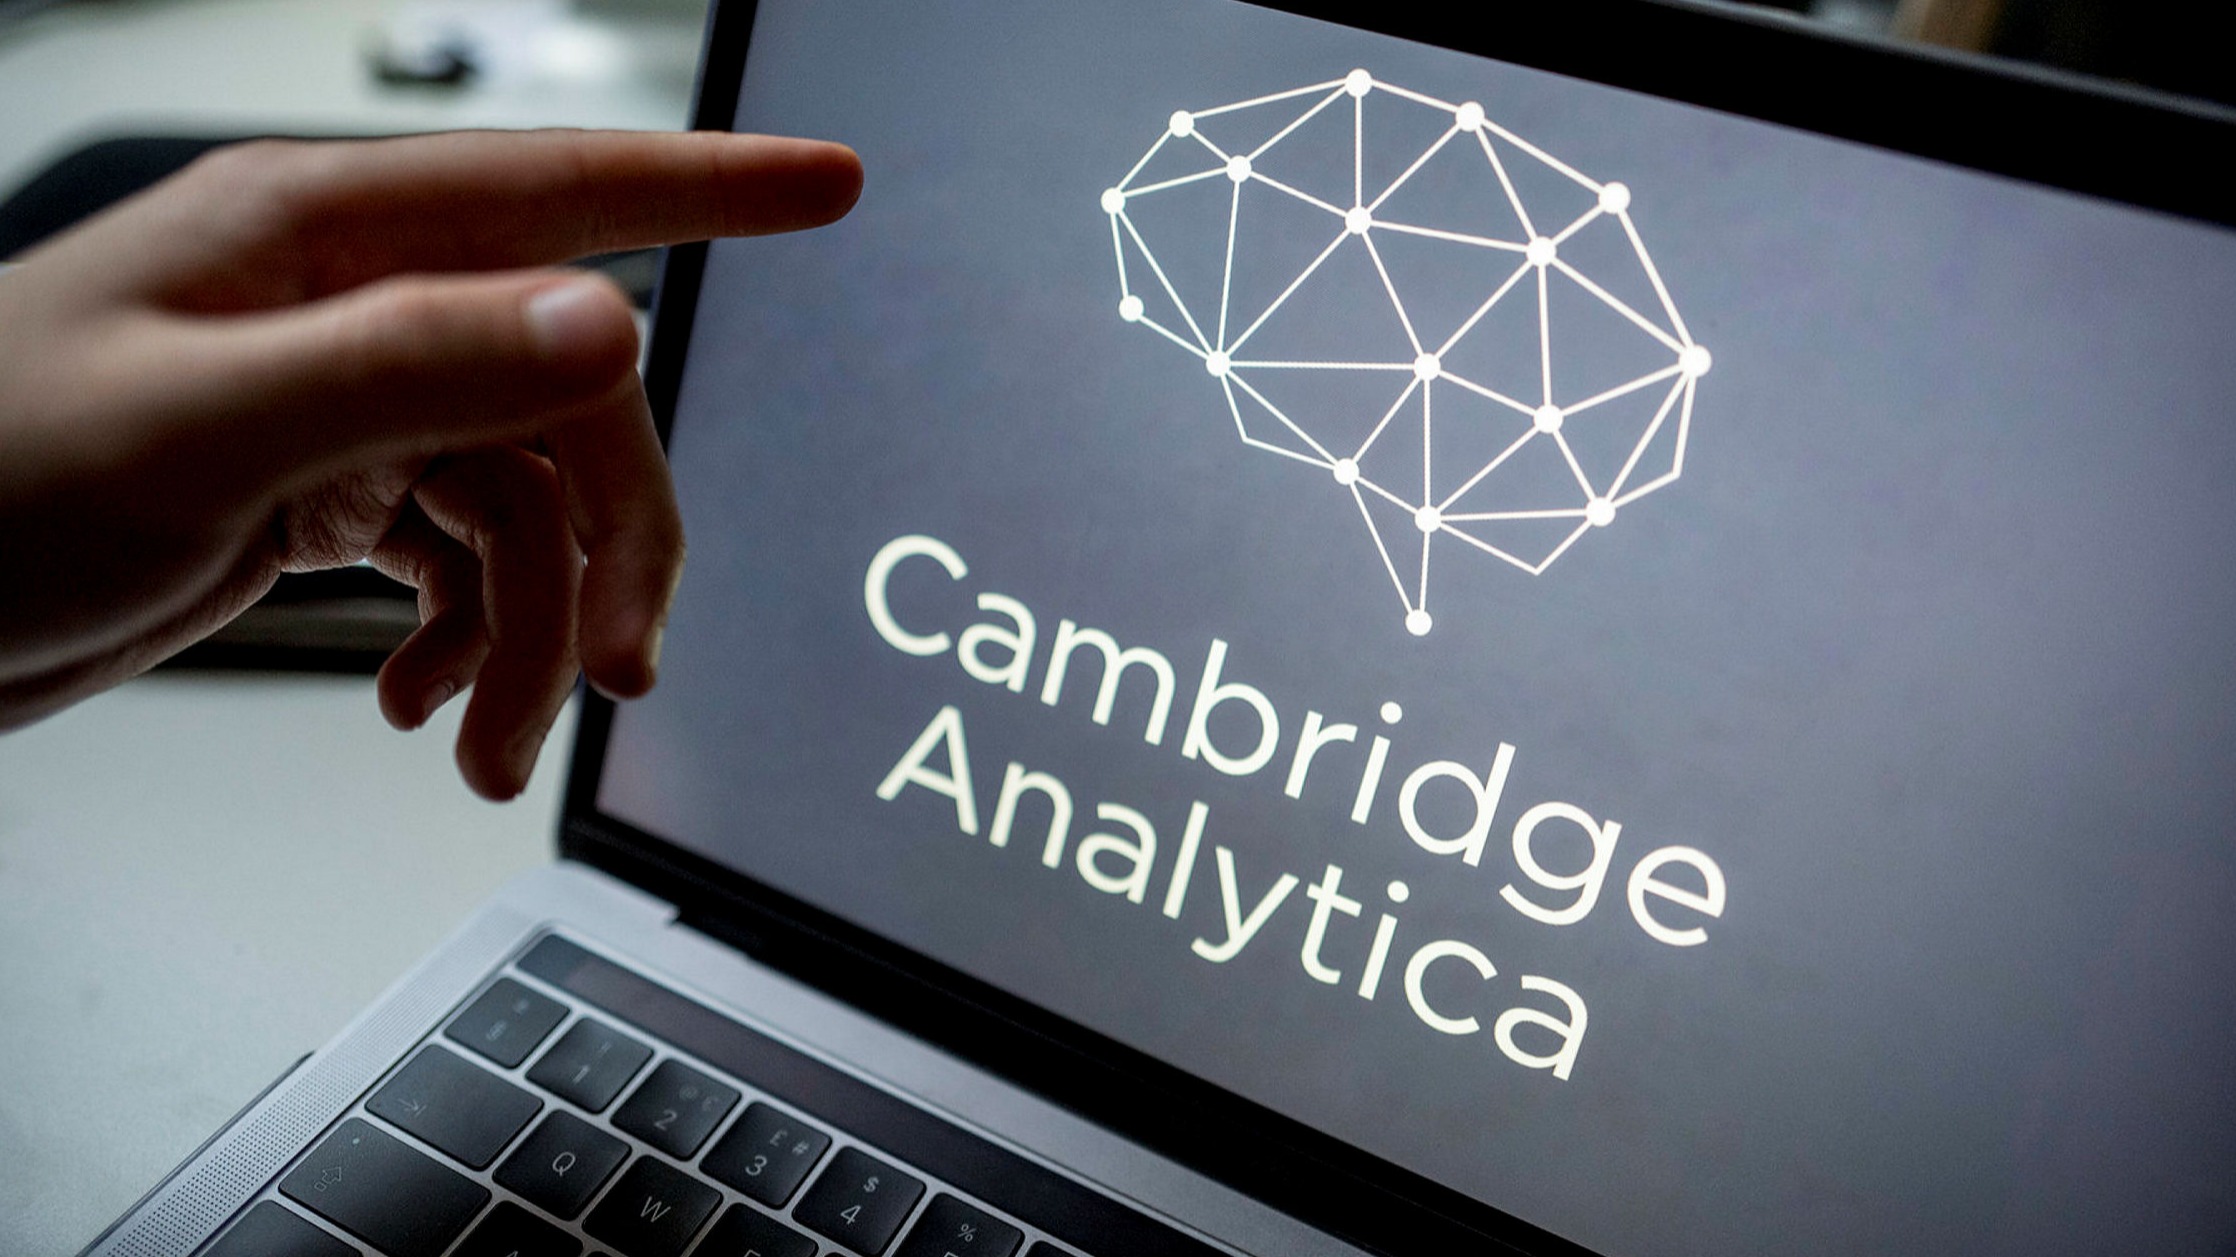 Company Cambridge Analytica. Cambridge Analytica. Cambridge Analytica scandal data loss. Uk information.